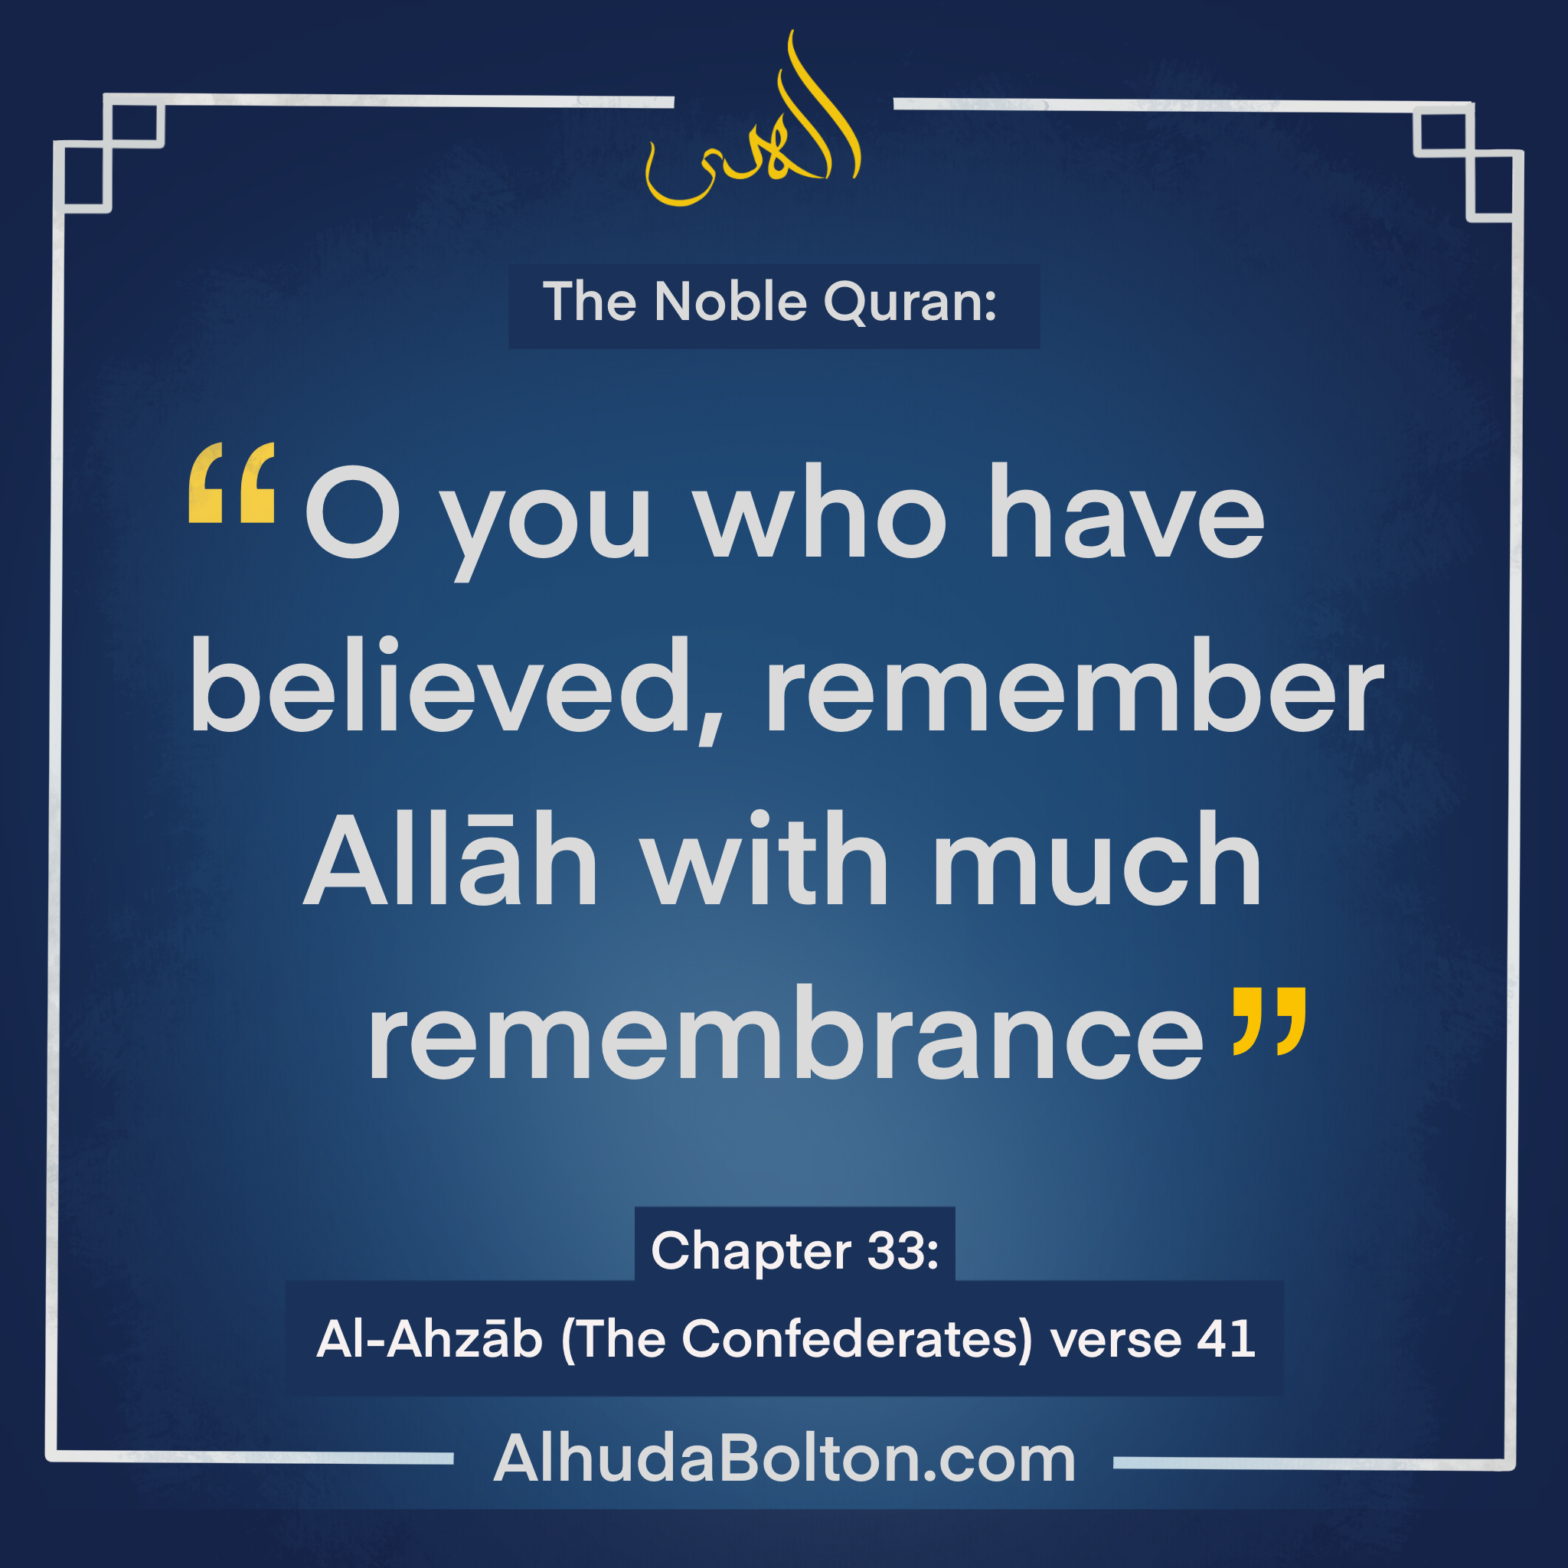 Quran: Remember Allah